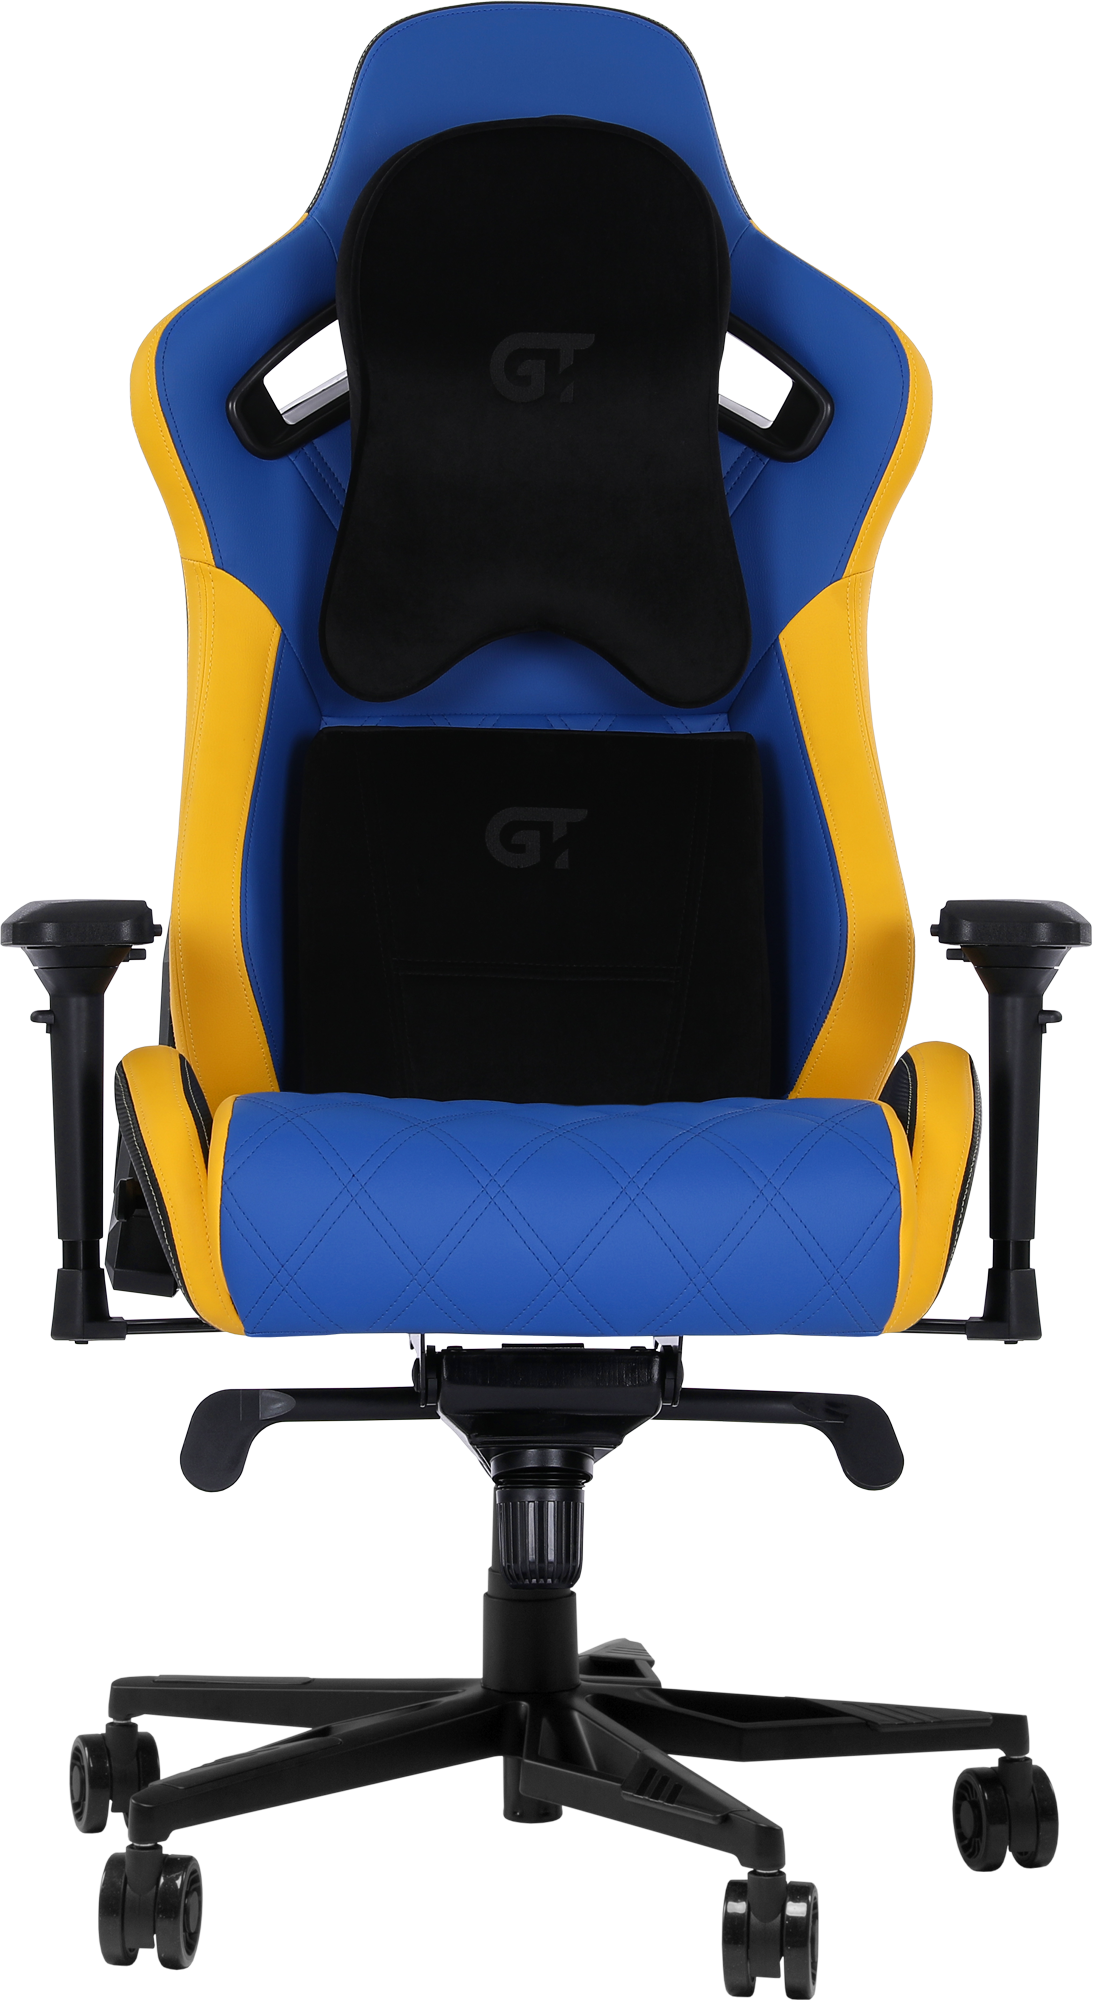 Геймерське крісло GT Racer синє з жовтим (X-0724 Blue/Yellow) - фото 2